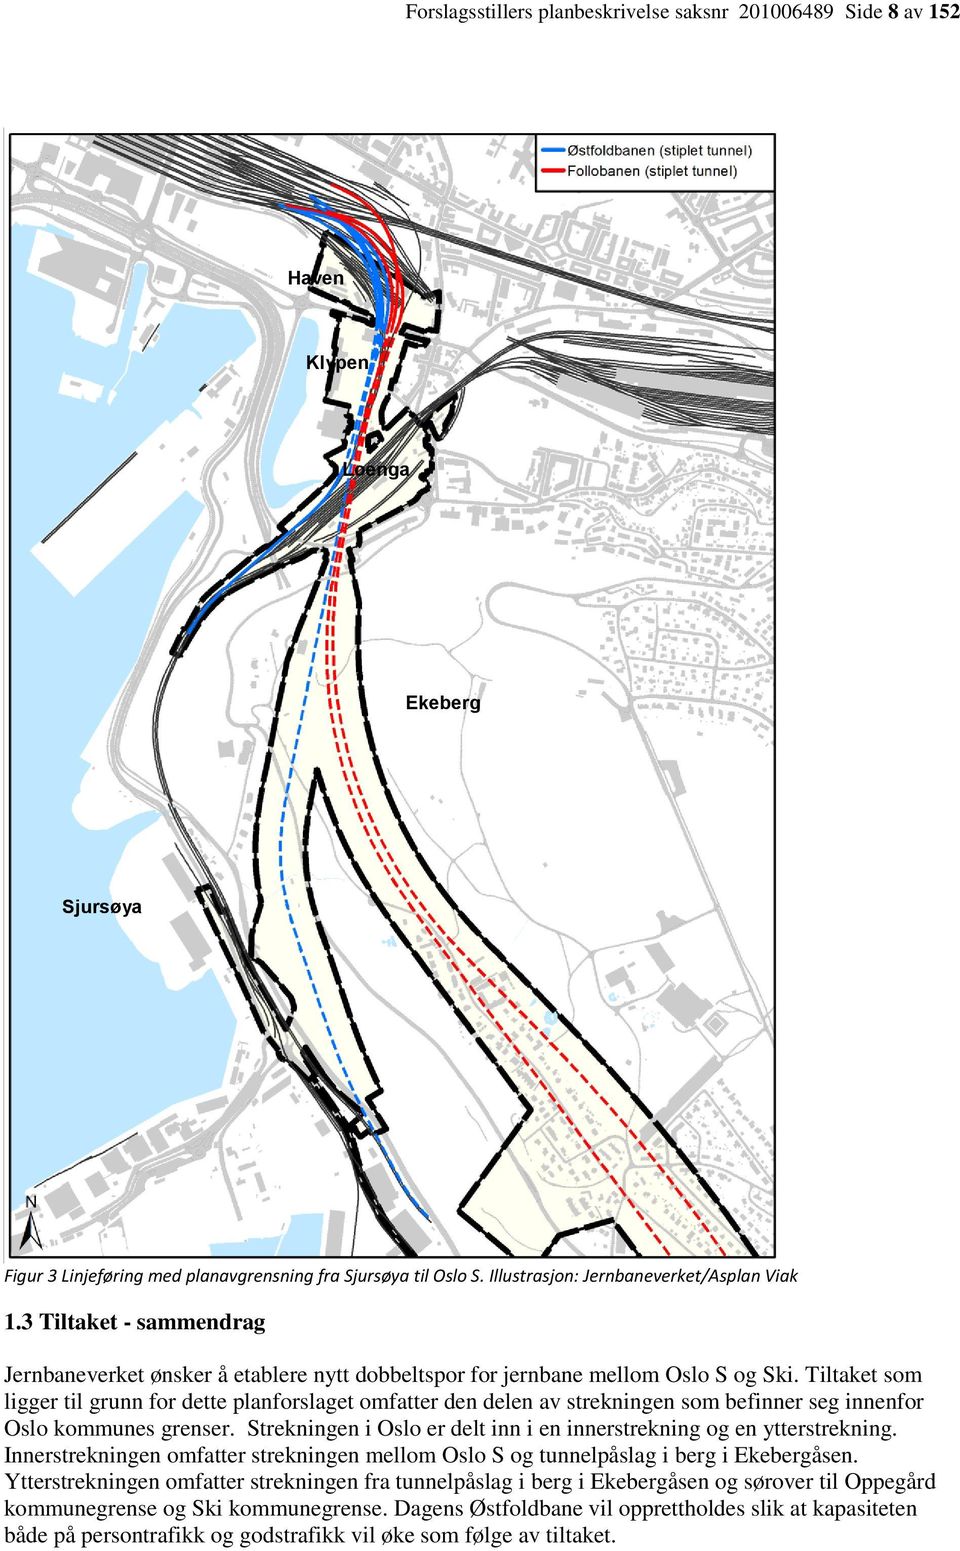 Tiltaket som ligger til grunn for dette planforslaget omfatter den delen av strekningen som befinner seg innenfor Oslo kommunes grenser.